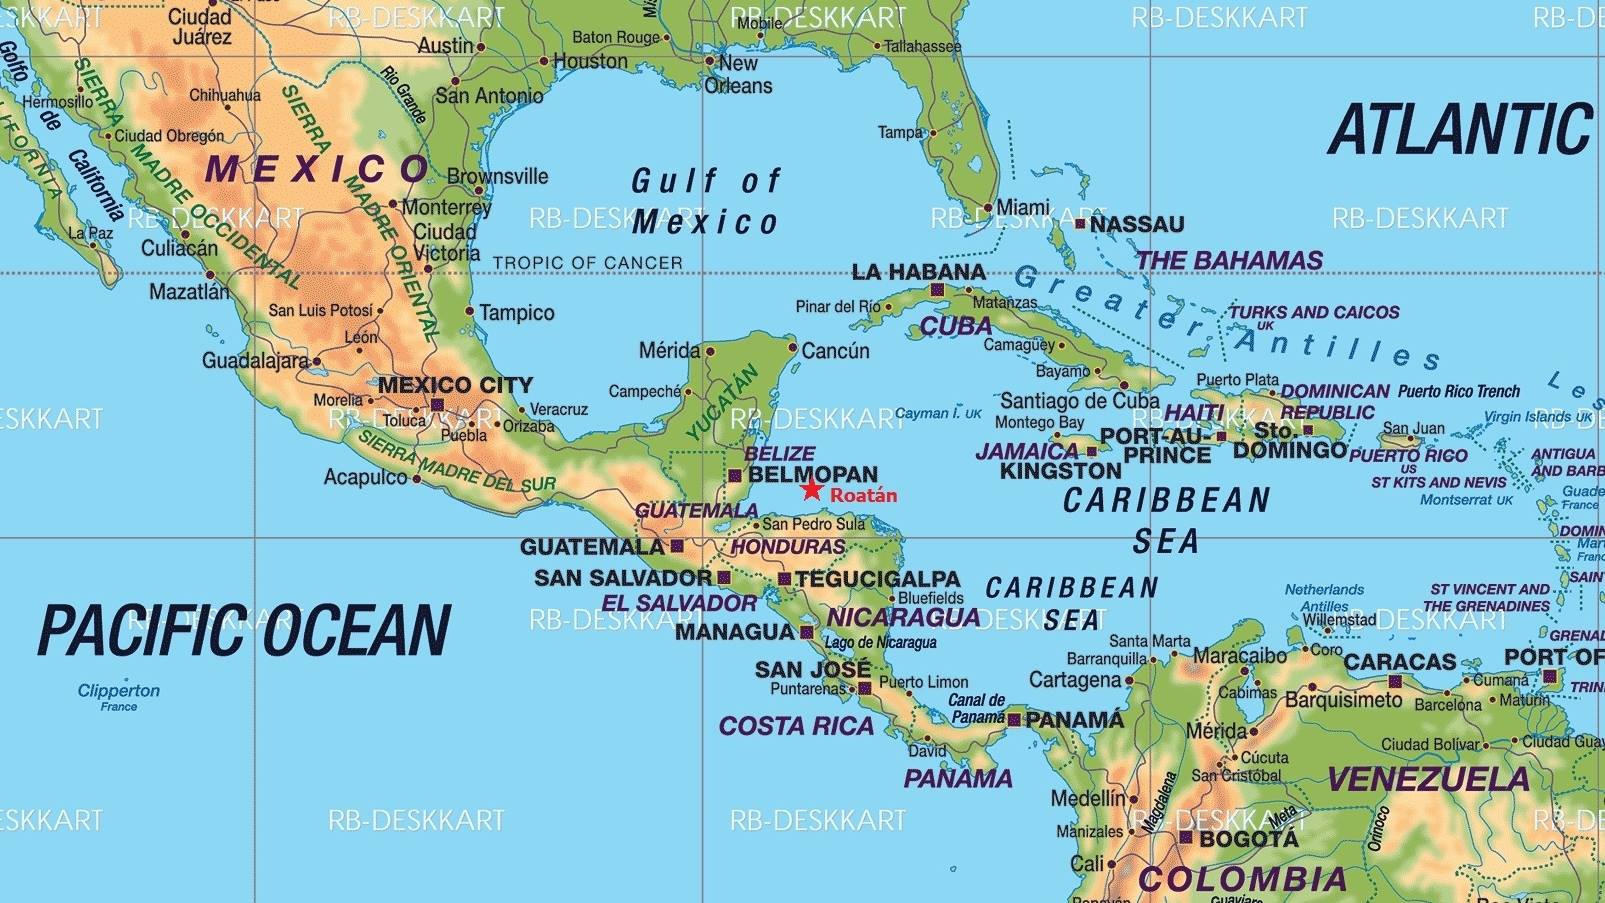 Karibik - mapa